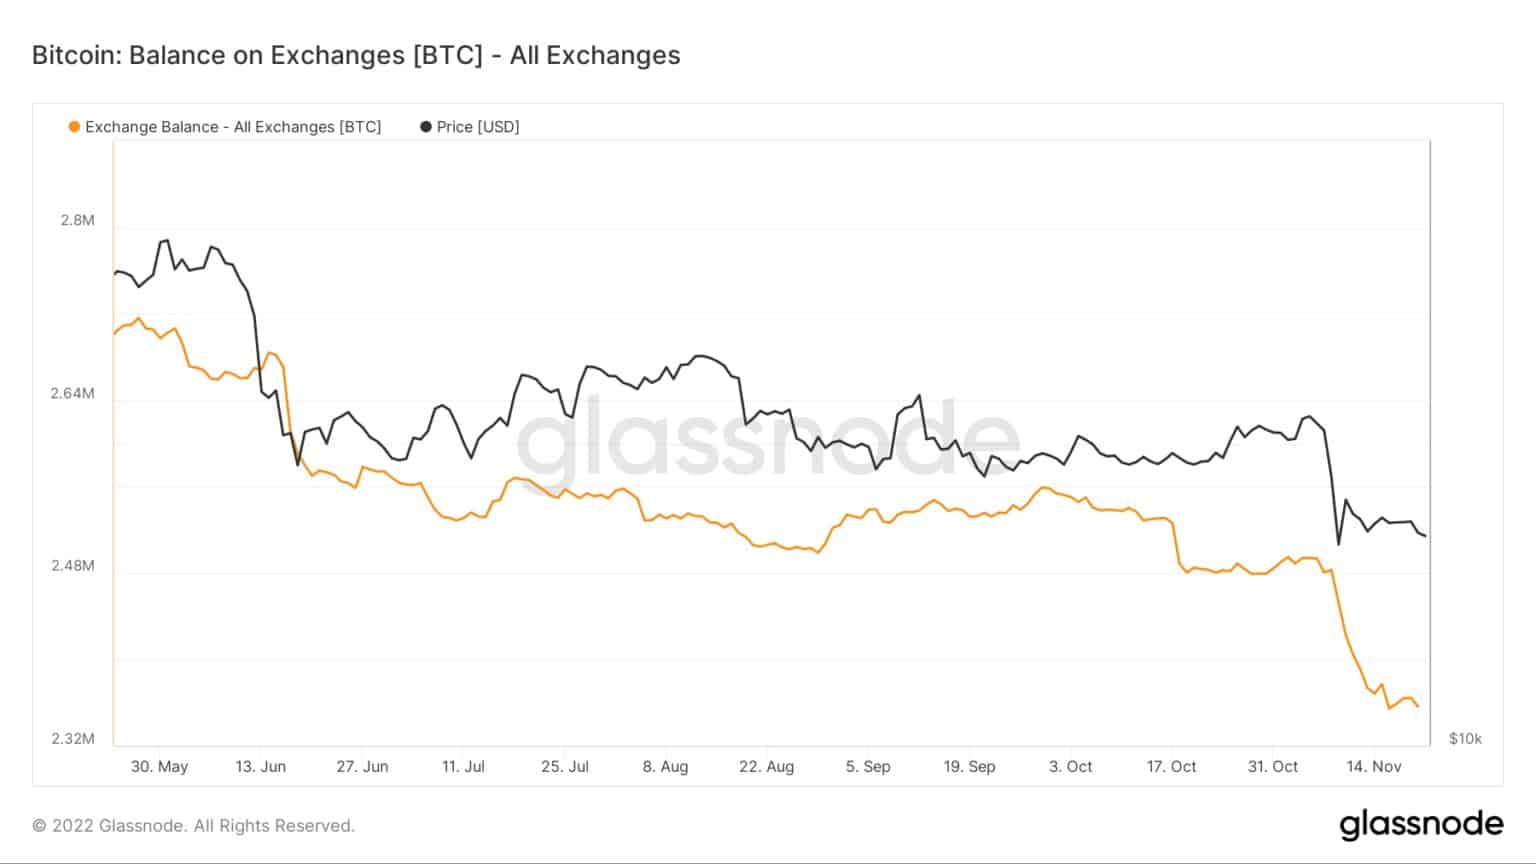 Bitcoin: Saldo en los intercambios - Todos los intercambios (Fuente: Glassnode)